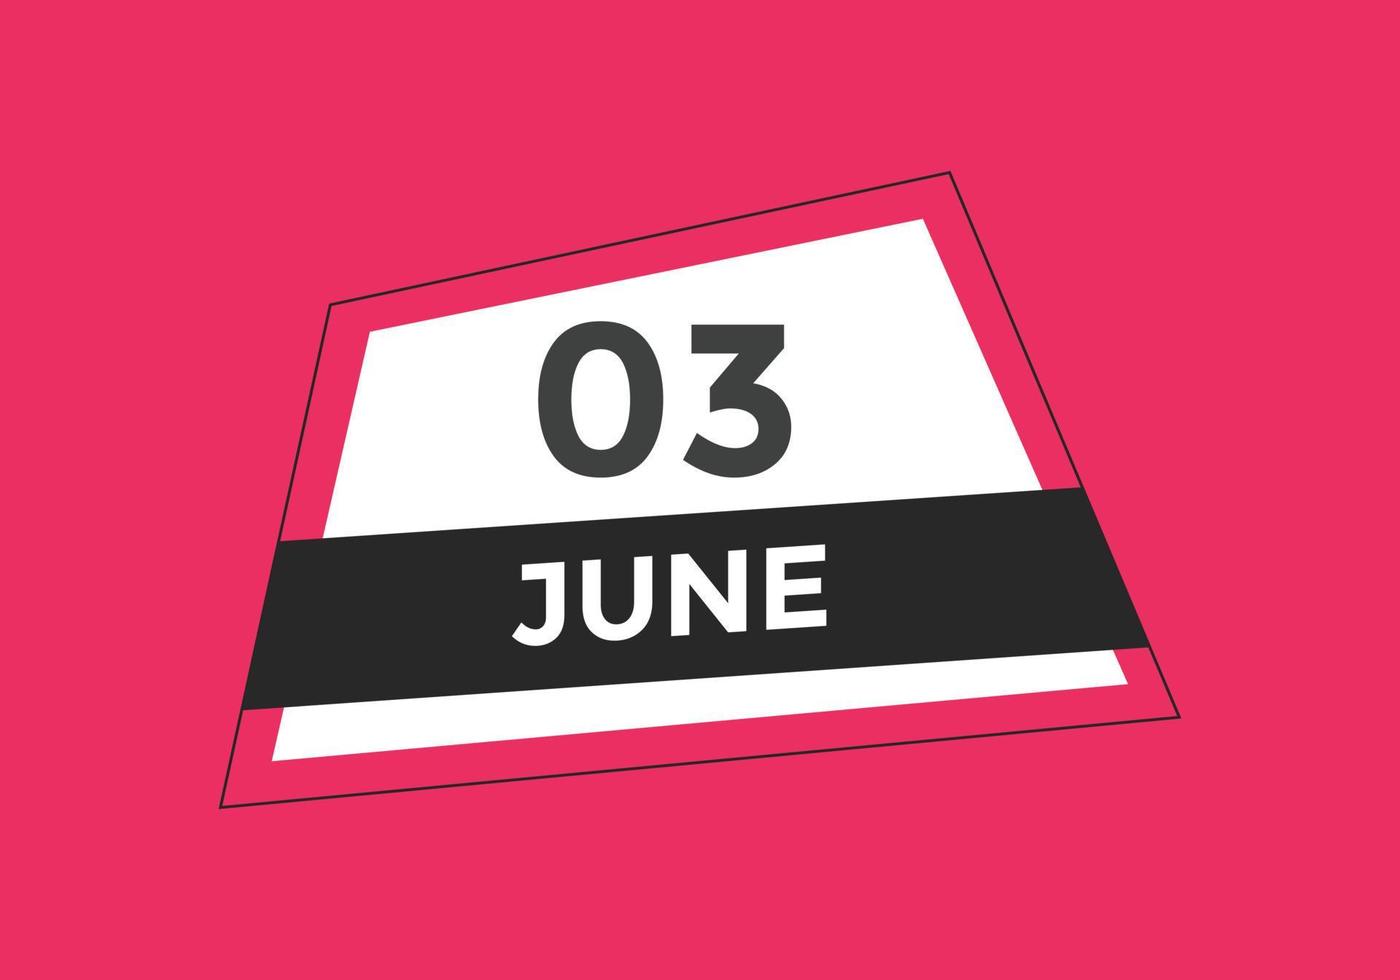 lembrete de calendário de 3 de junho. Modelo de ícone de calendário diário de 3 de junho. calendário 3 de junho modelo de design de ícone. ilustração vetorial vetor